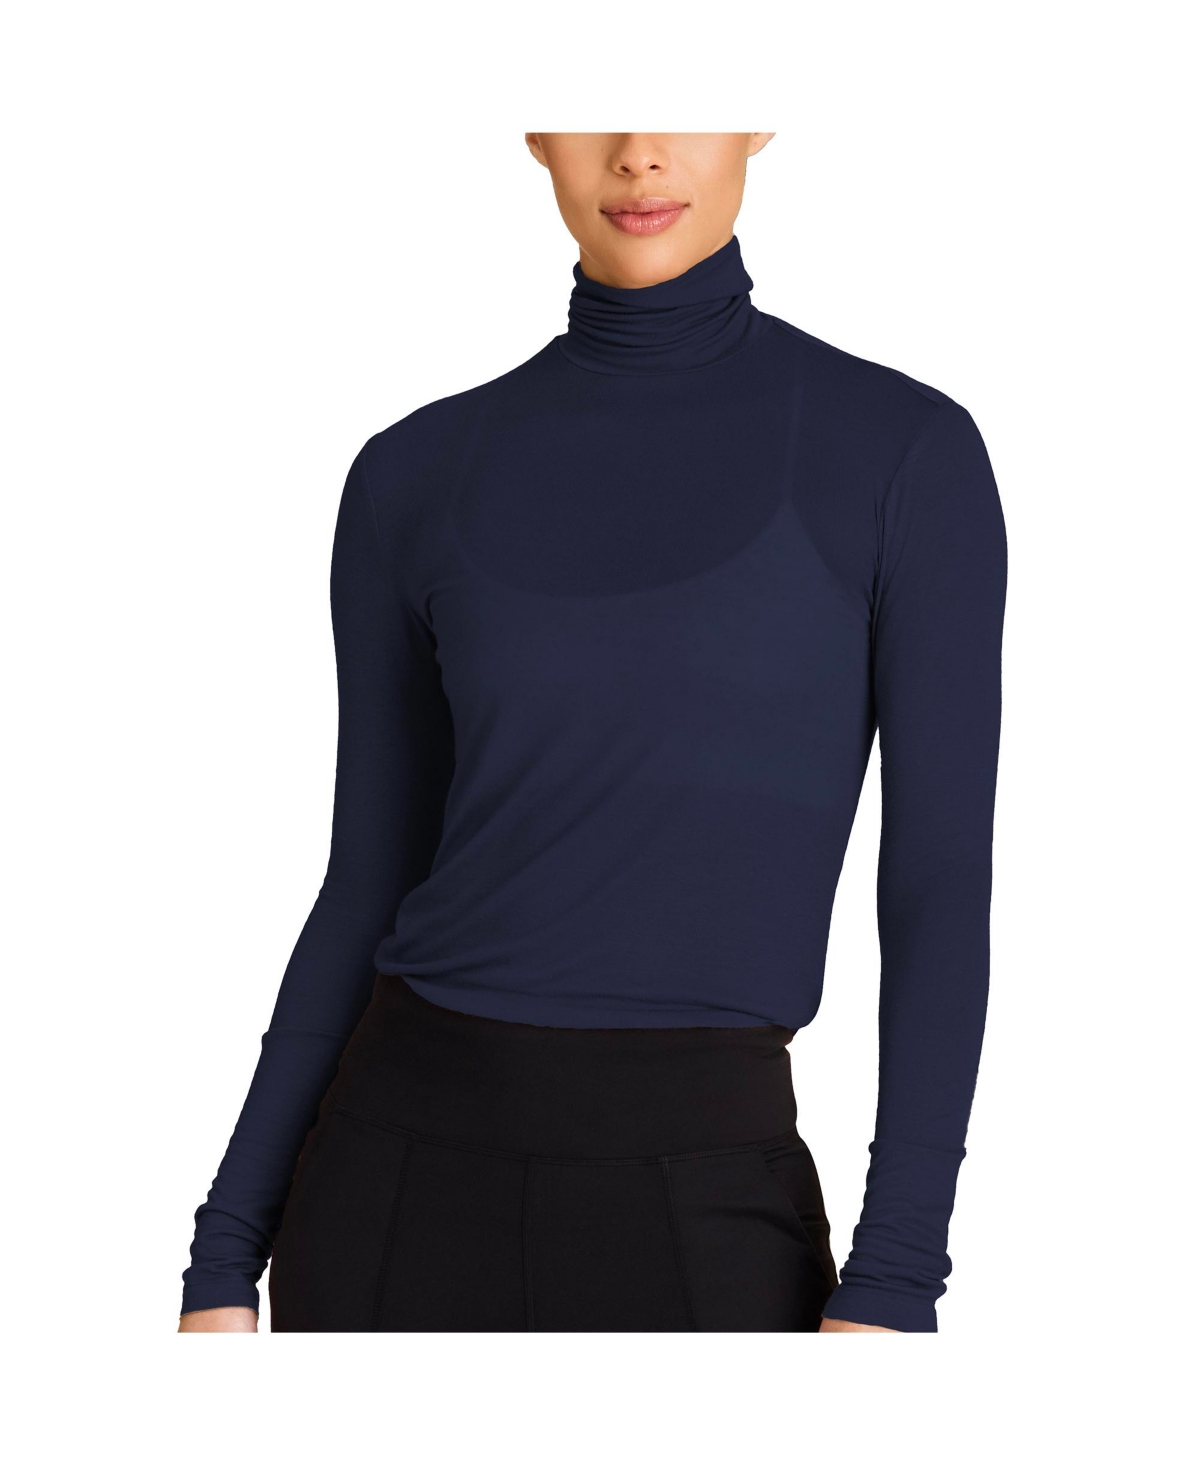  Alala Regular Size Adult Women Washable Cashmere Turtleneck Long Sleeve T-Shirt